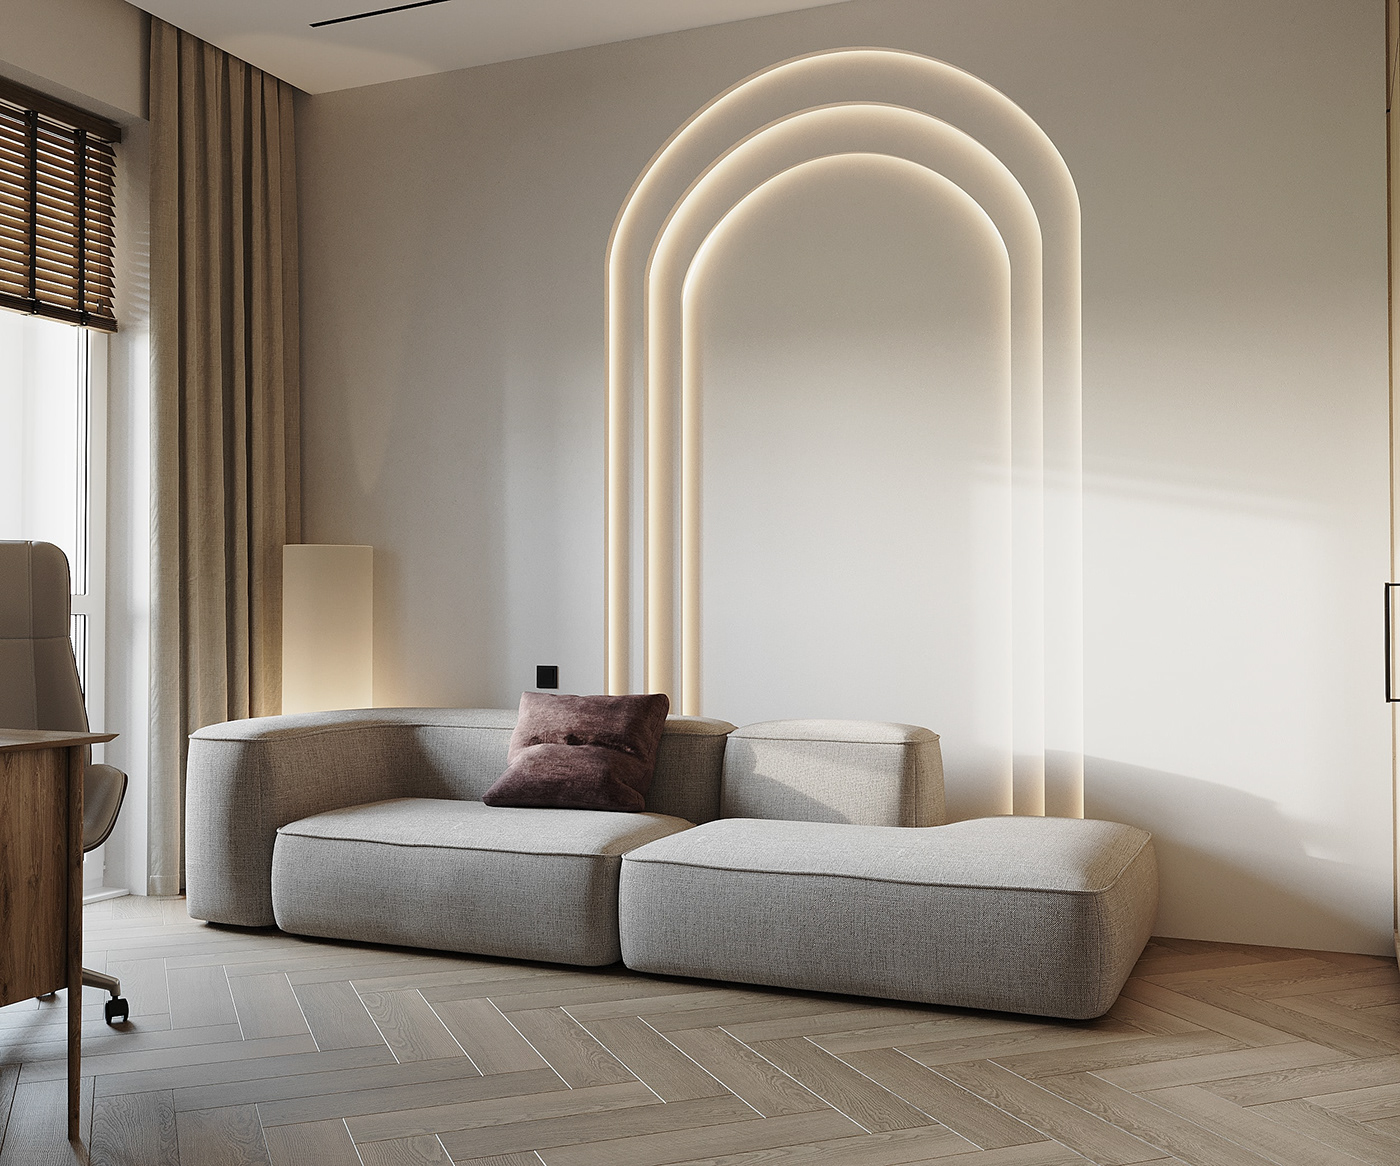 corona Render 3ds max architecture visualisation interior design  modern 3D archviz